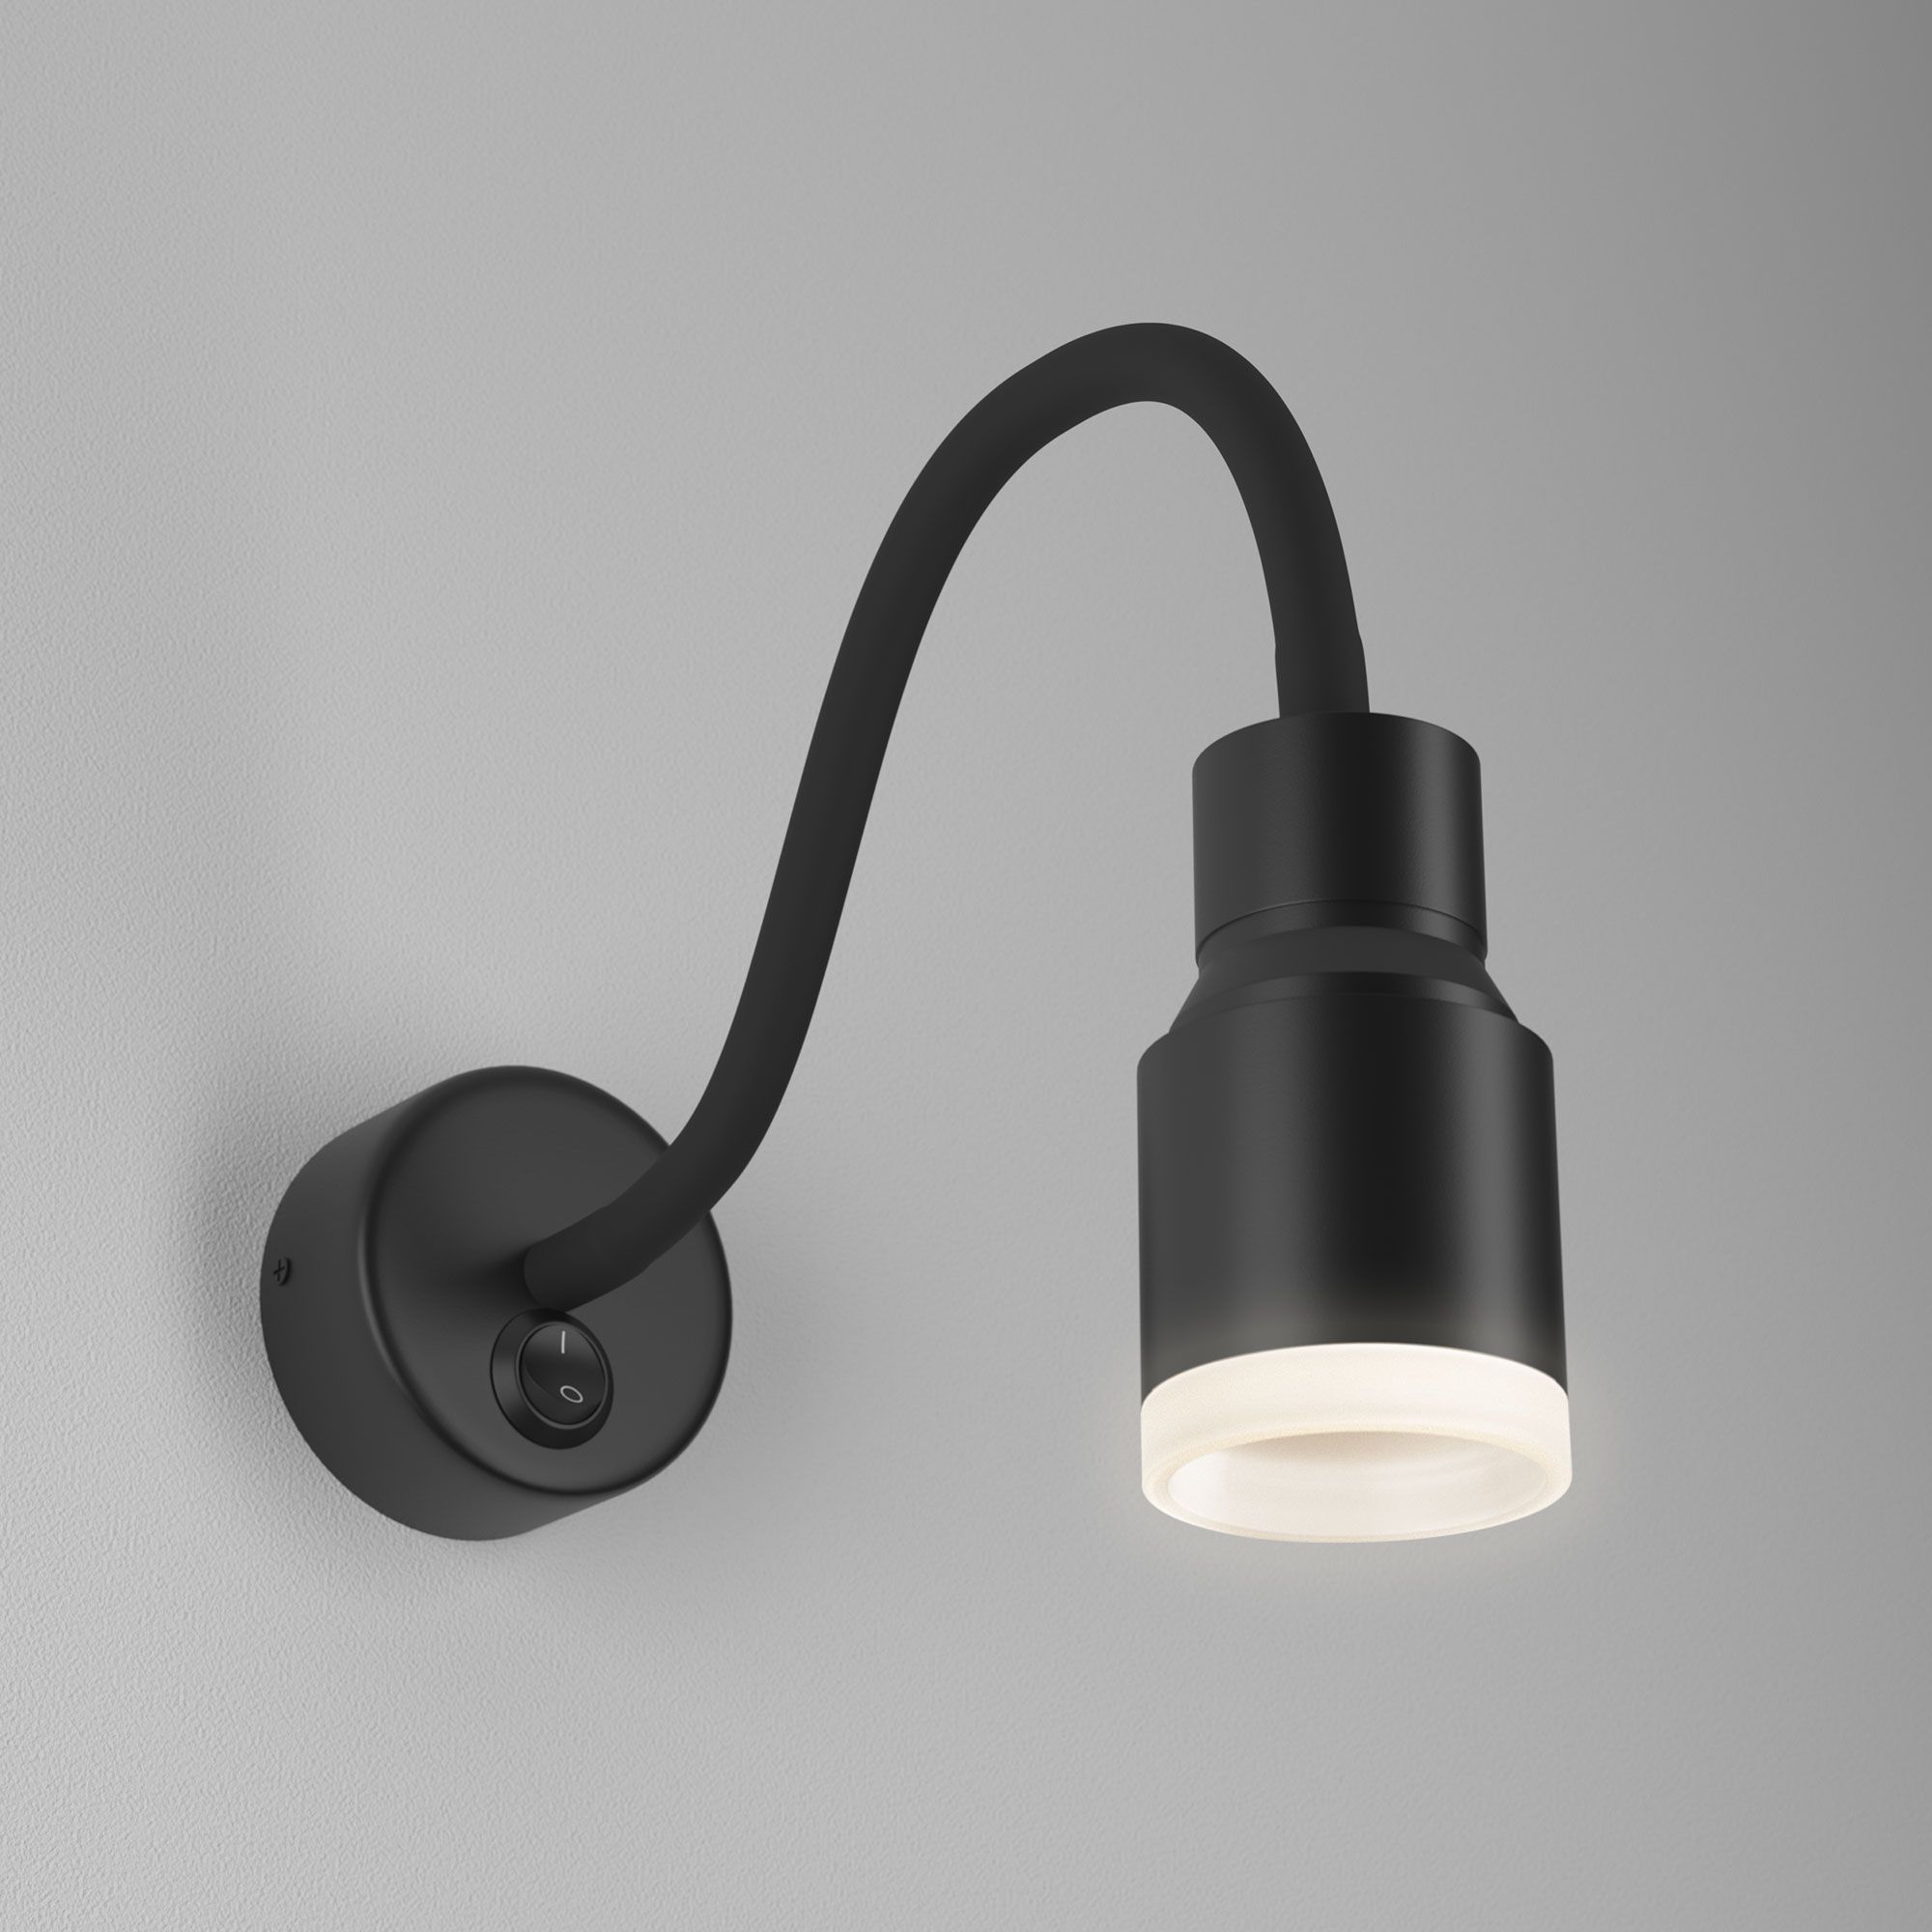 Настенный светодиодный светильник с гибким корпусом Molly LED MRL LED 1015 черный